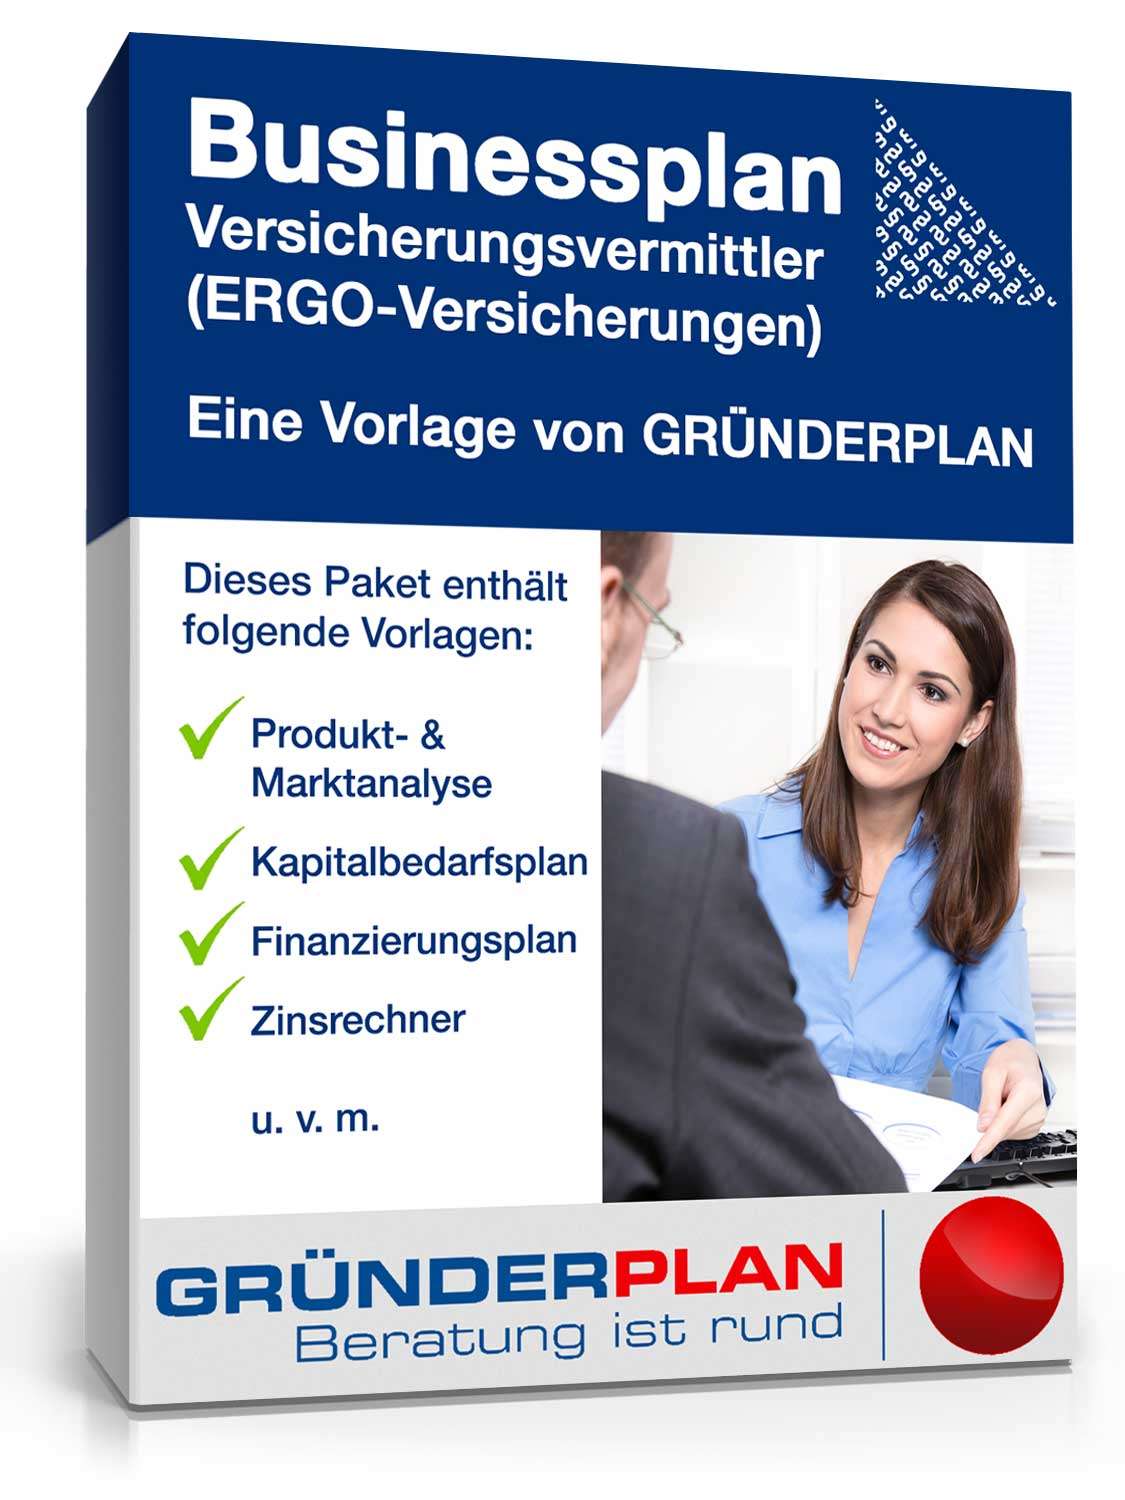 Hauptbild des Produkts: Businessplan Versicherungsvermittler (ERGO-Versicherungen) von Gründerplan